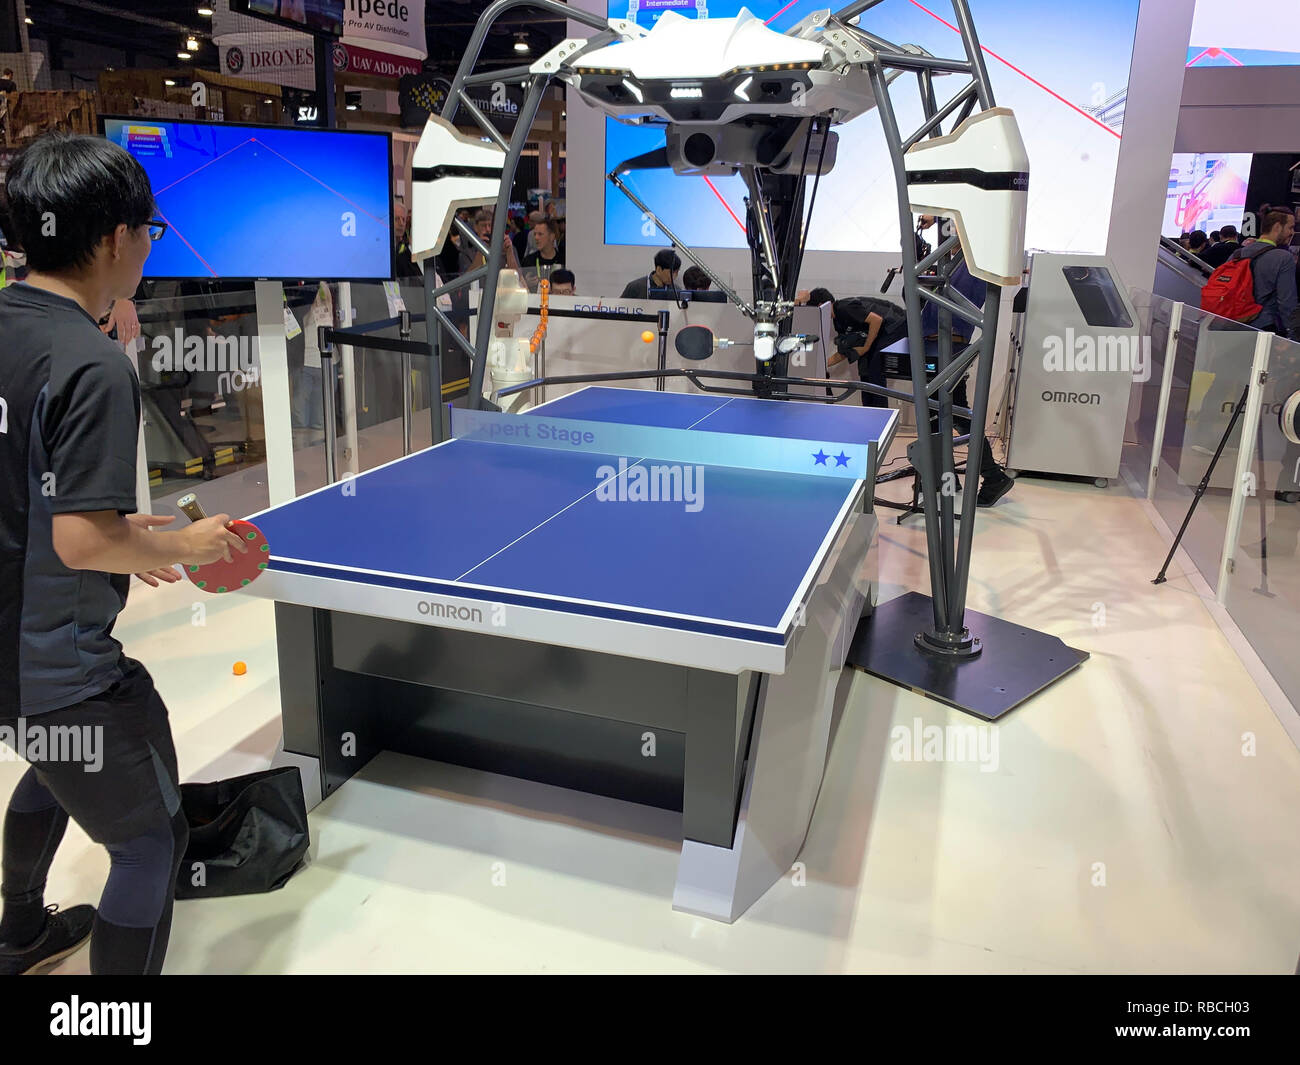 Omron di intelligenza artificiale-powered FORPHEUS robot che agisce come un tavolo da ping pong tutor, che ha fatto il suo debutto al Consumer Electronics Show (CES) di Las Vegas. Foto Stock